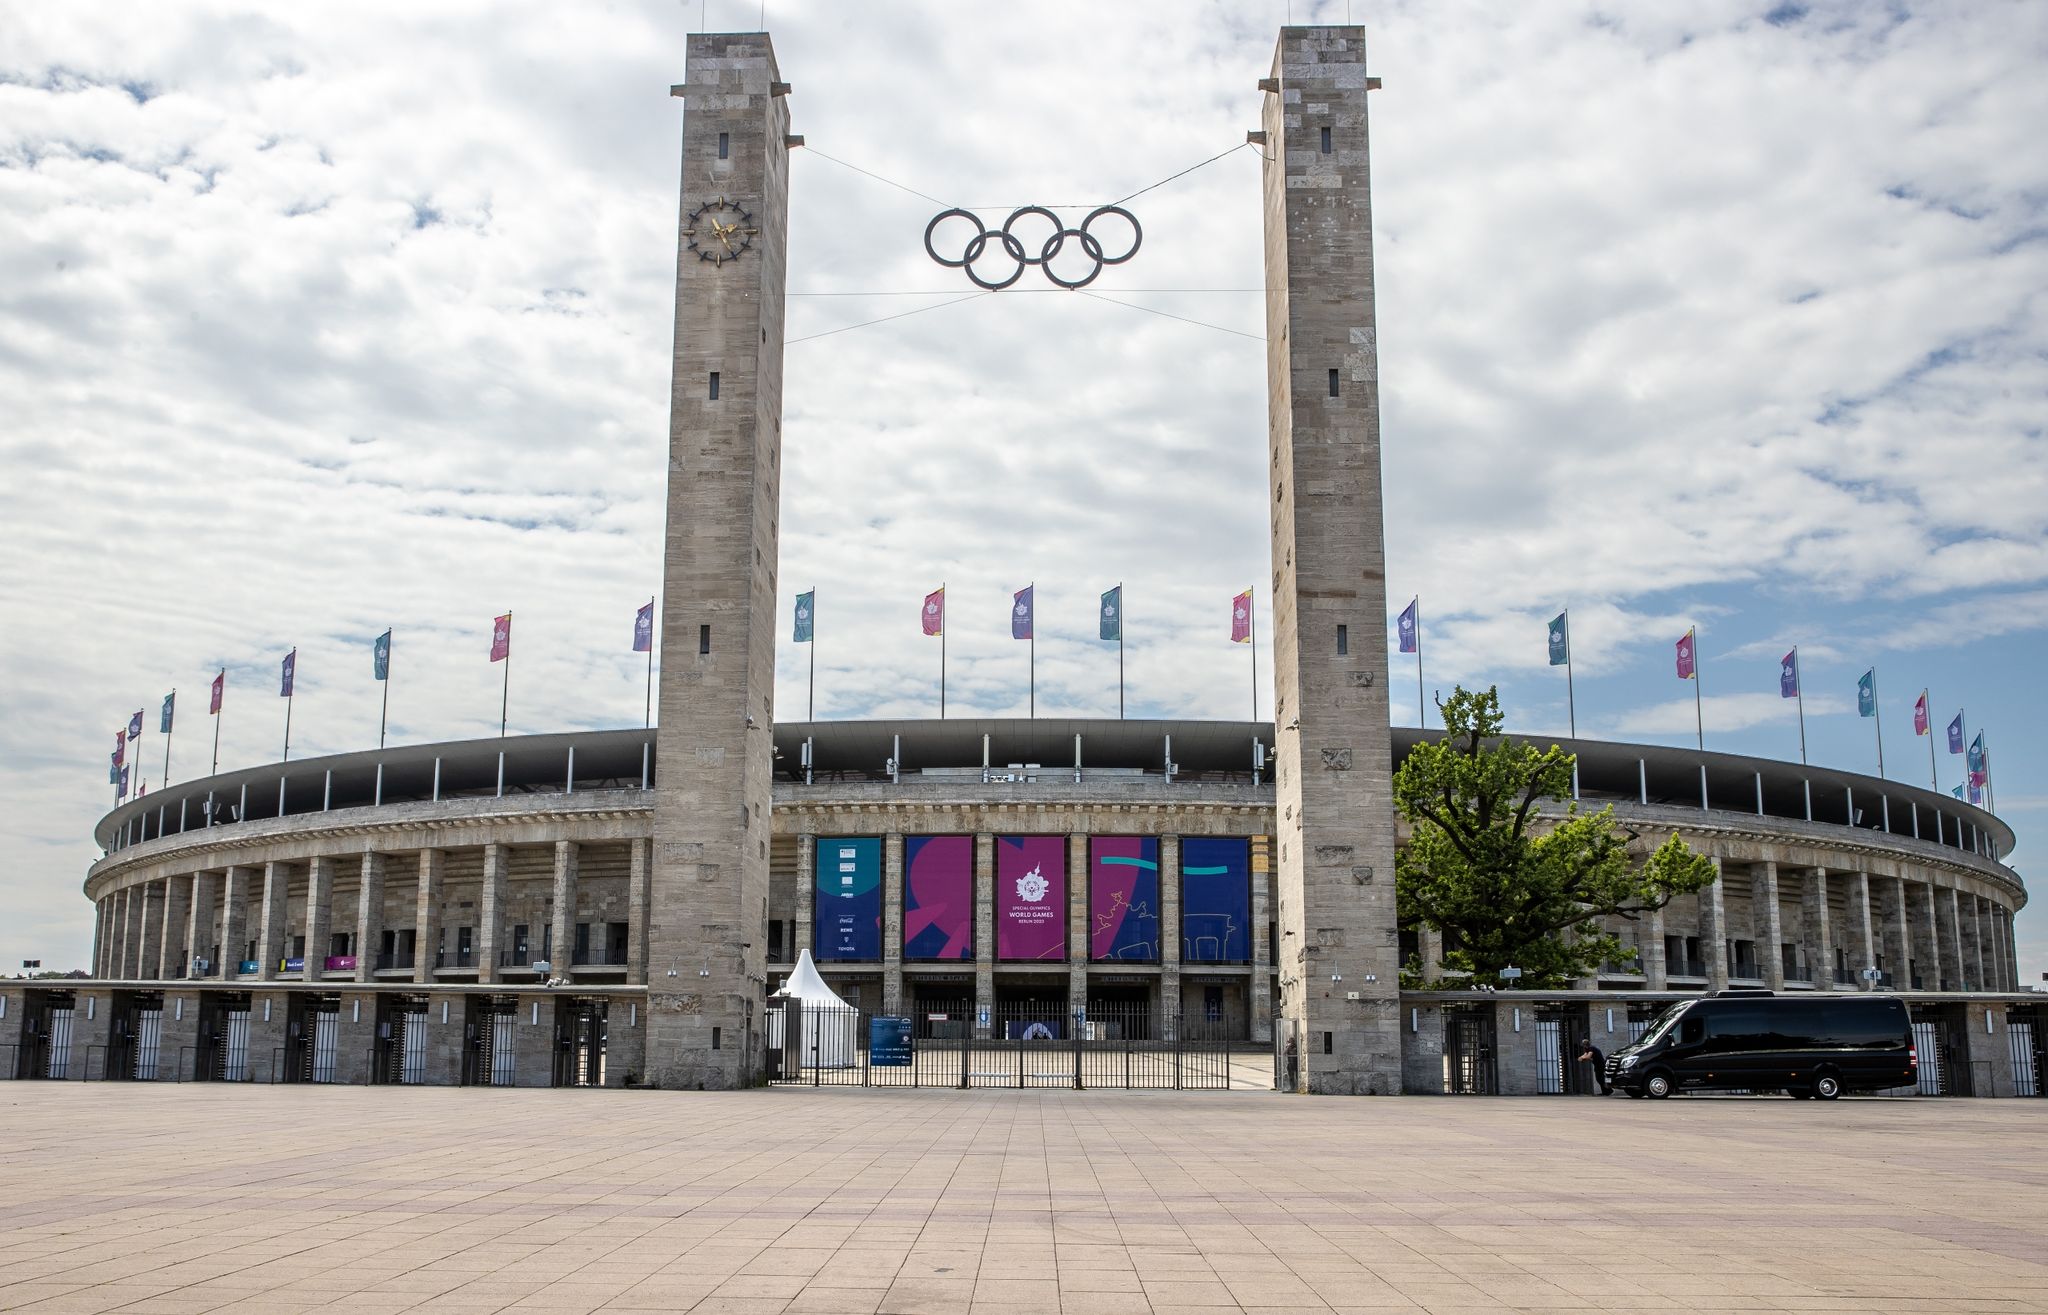 Die Aktiven der Special Olympics World Games  können sich in Berlin auf einen würdevollen Rahmen bei der Eröffnungsfeier freuen.